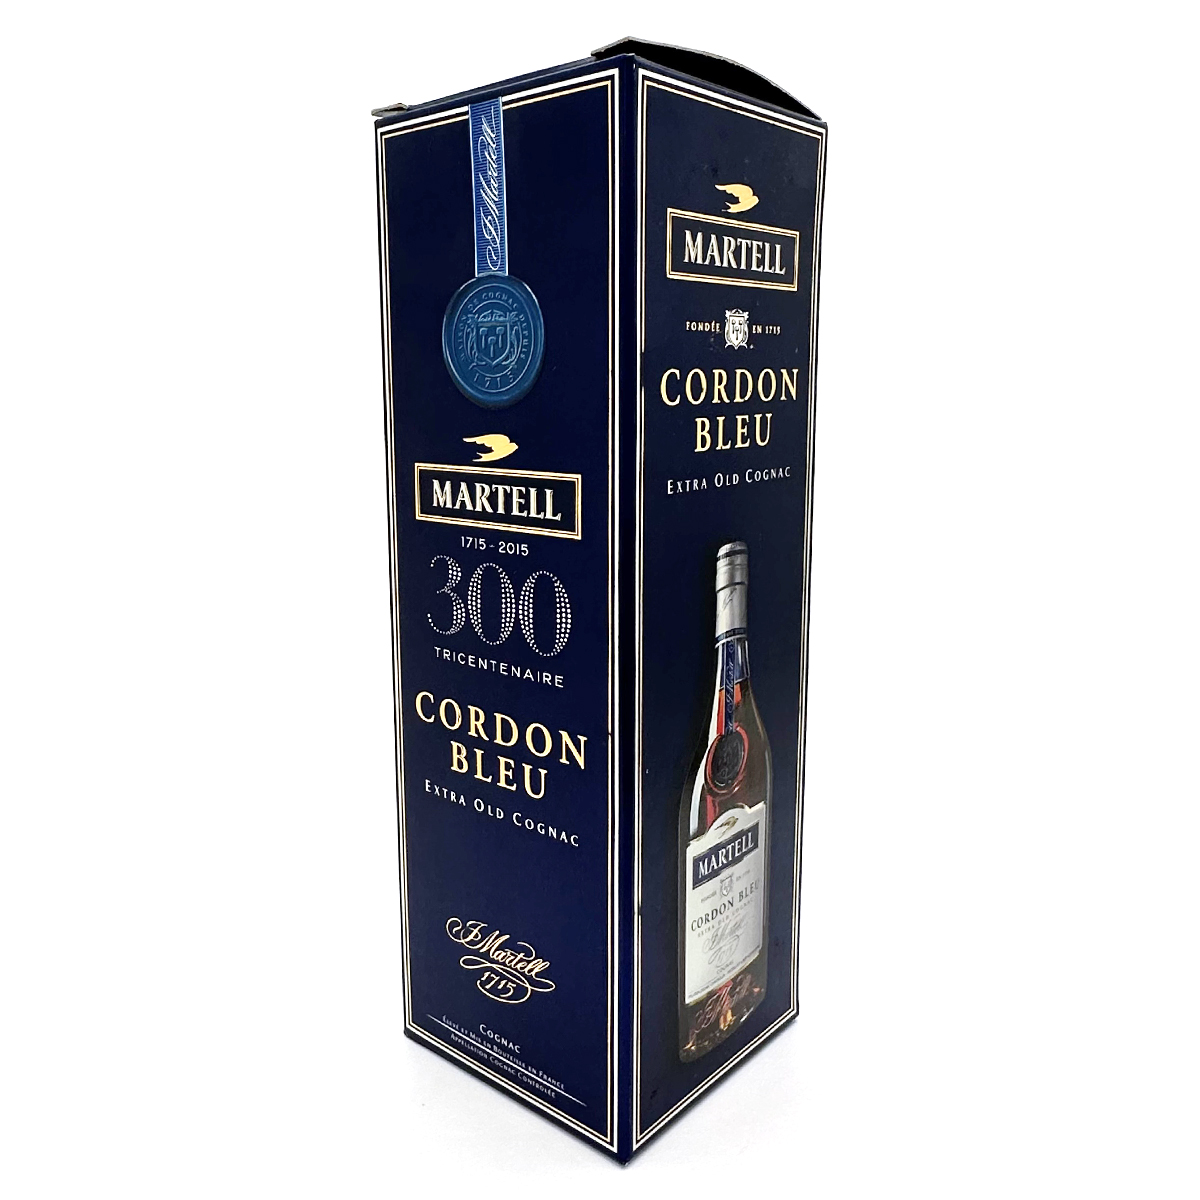 CORDON BLUE cognac マーテル コルドンブルー バカラボトル